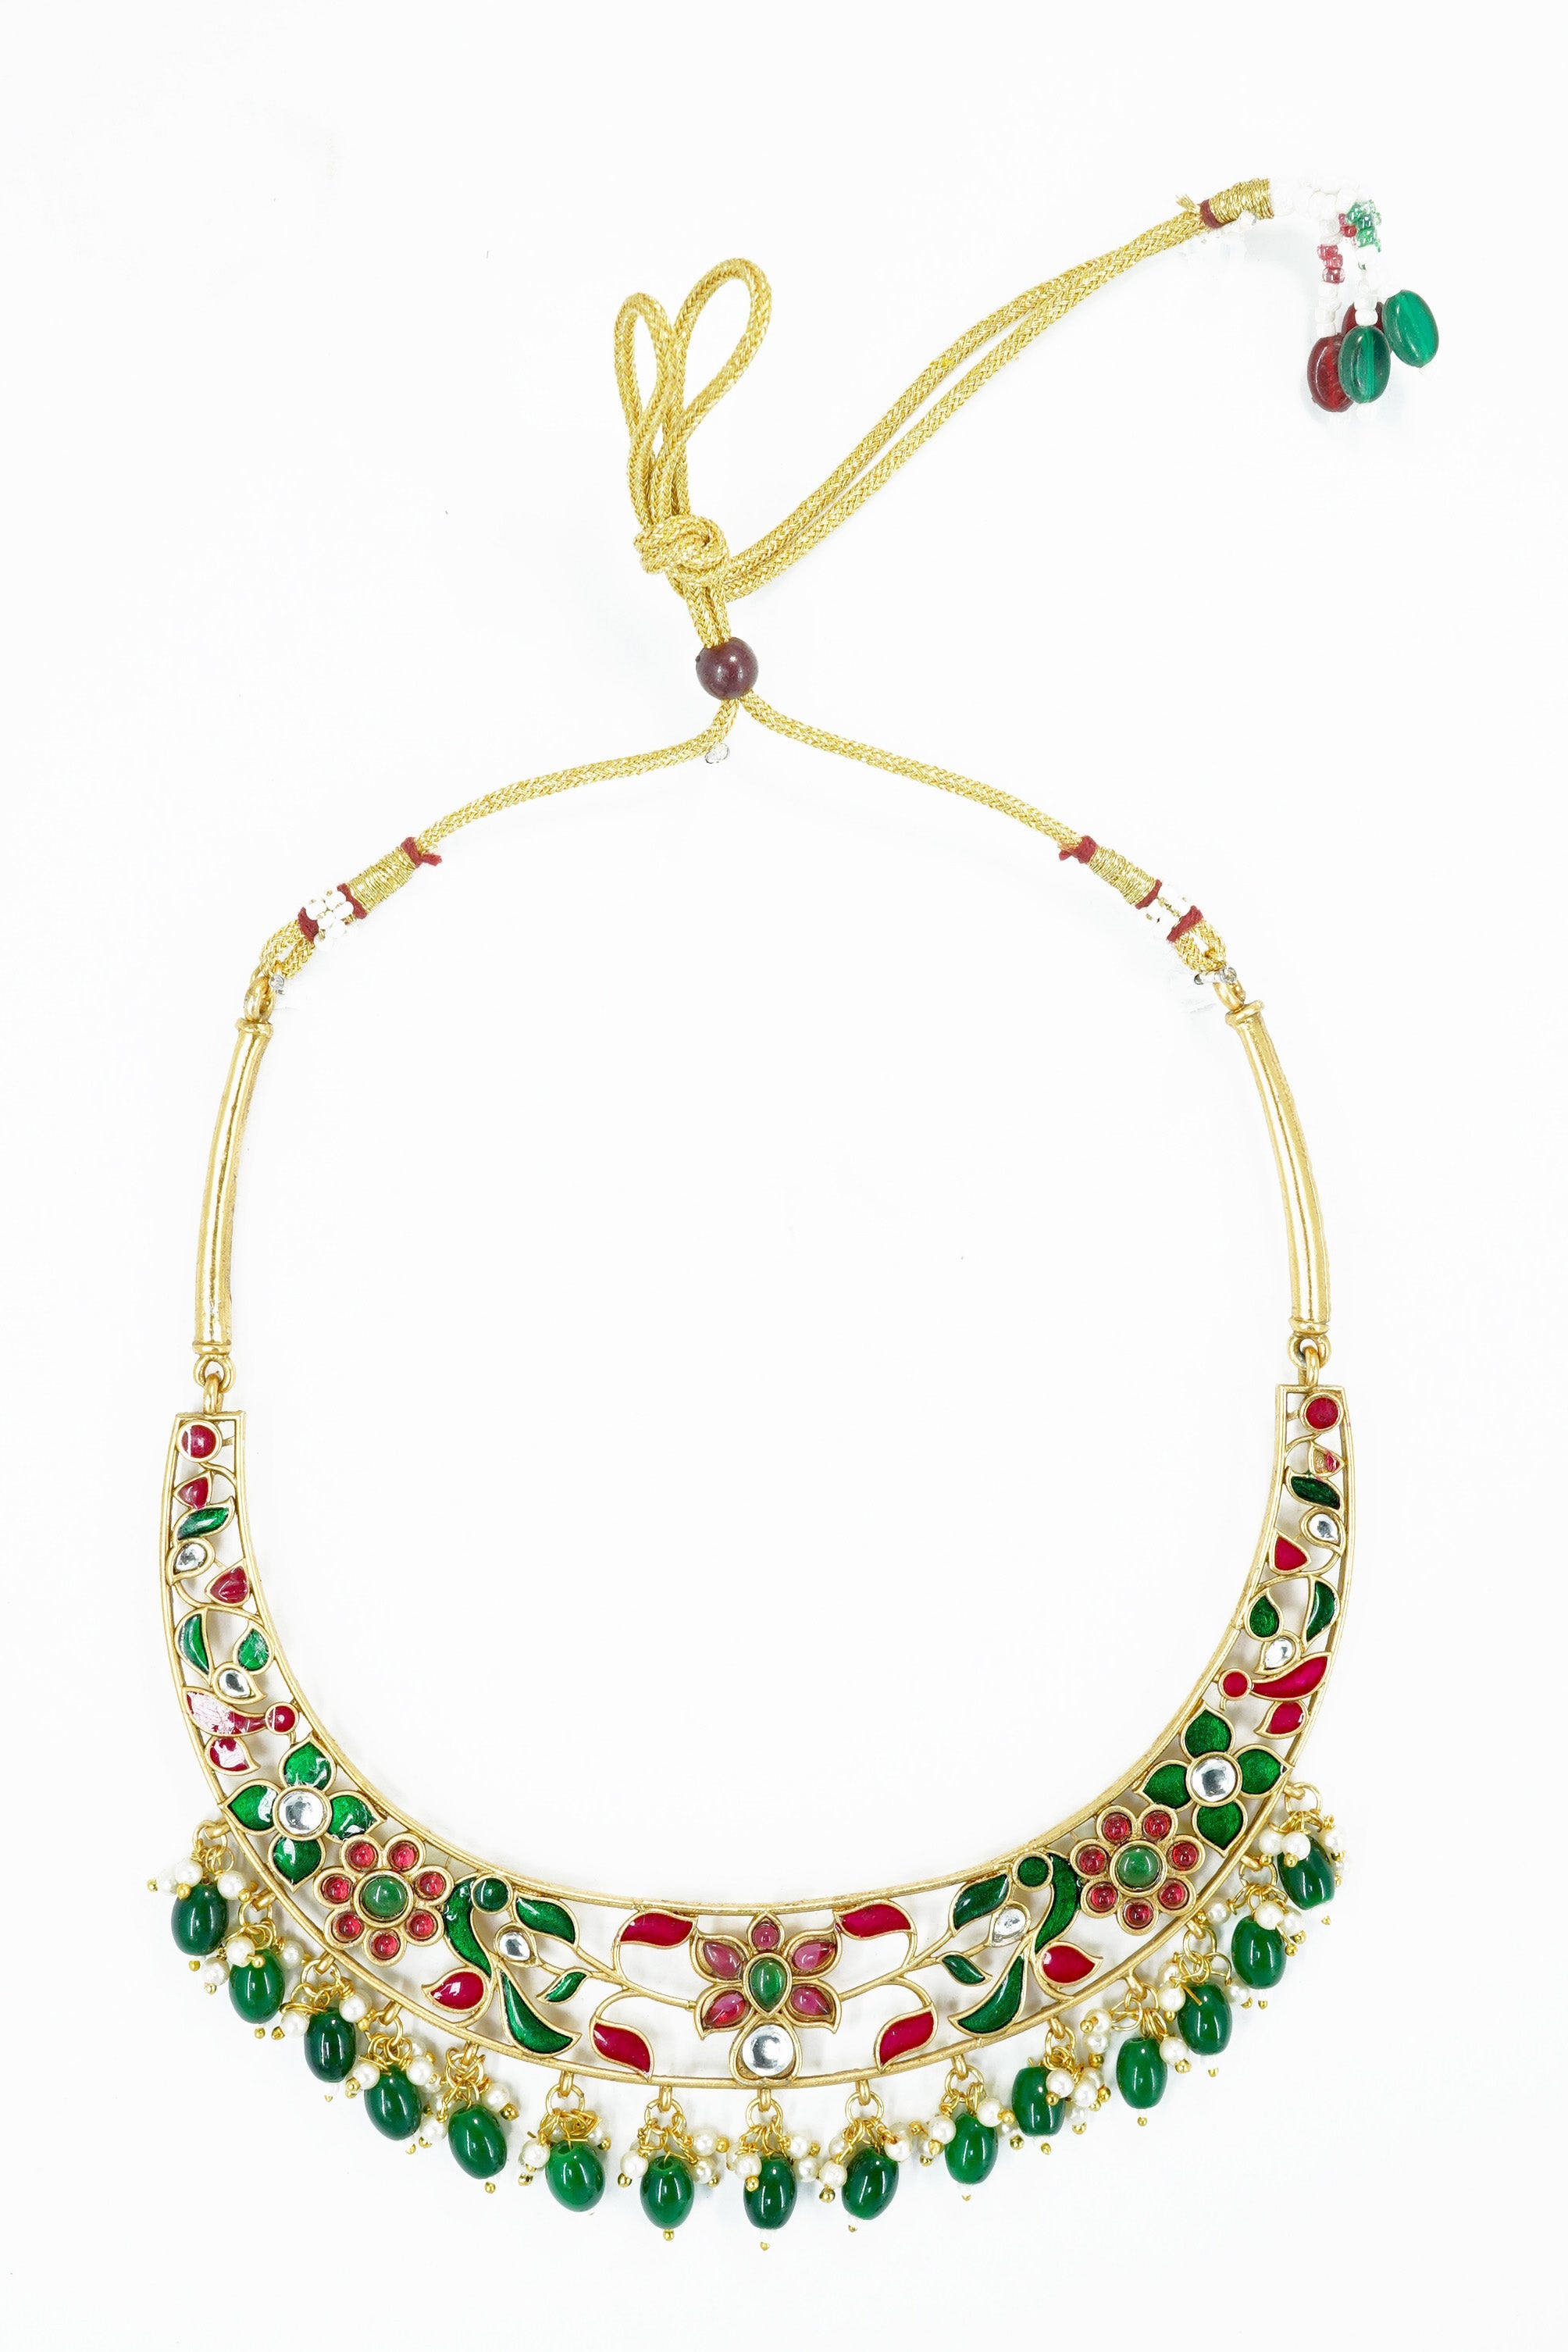 Antique finish Jadau replica premium quality necklace set 10535N